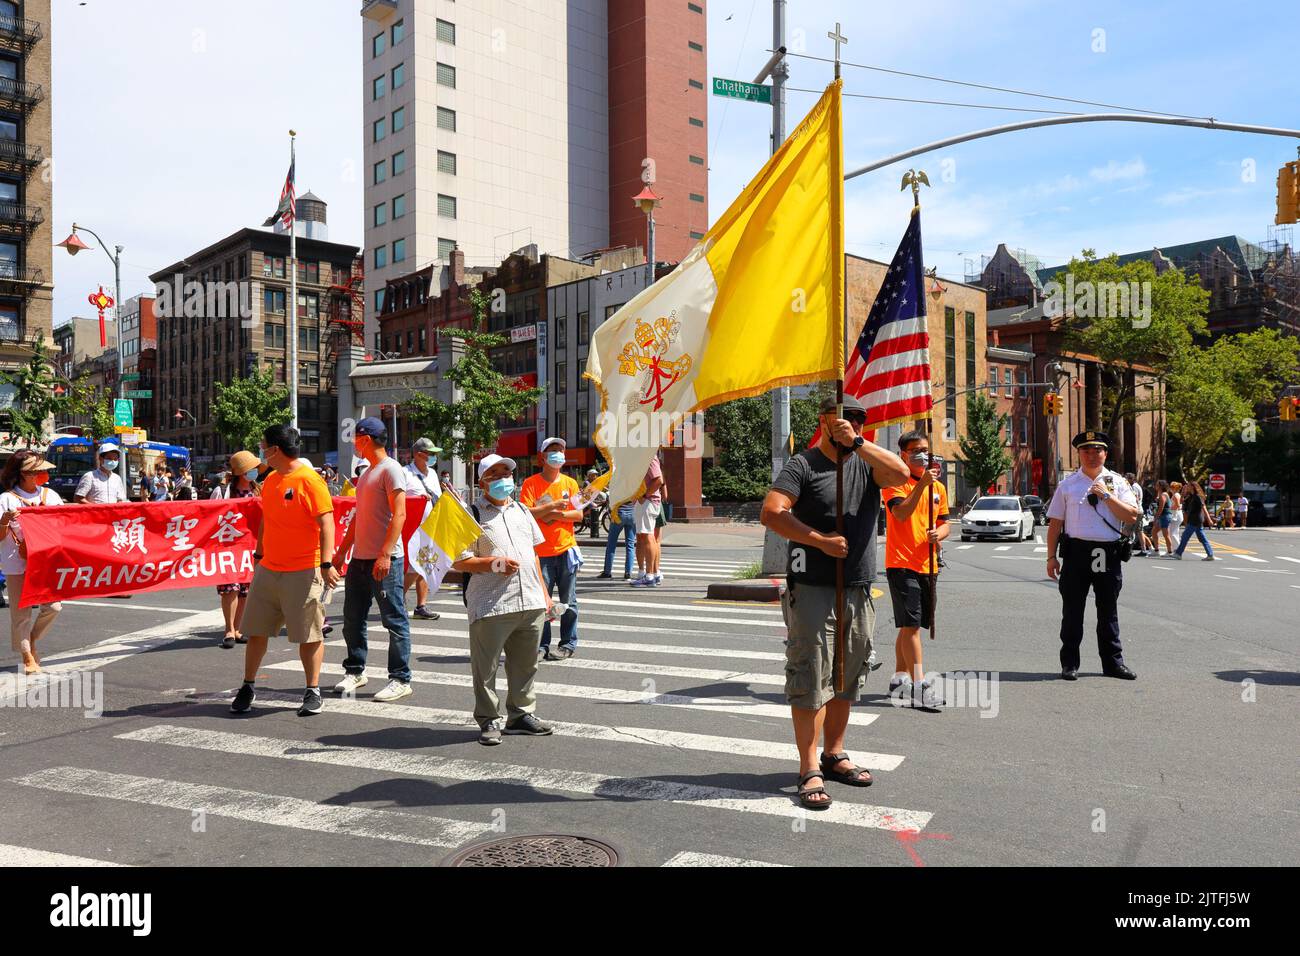 Les Chinois américains portent le drapeau catholique à la Fête de l'Assomption à l'église RC de Transfiguration, dans le quartier chinois de Manhattan, à New York, au 14 août 2022 Banque D'Images